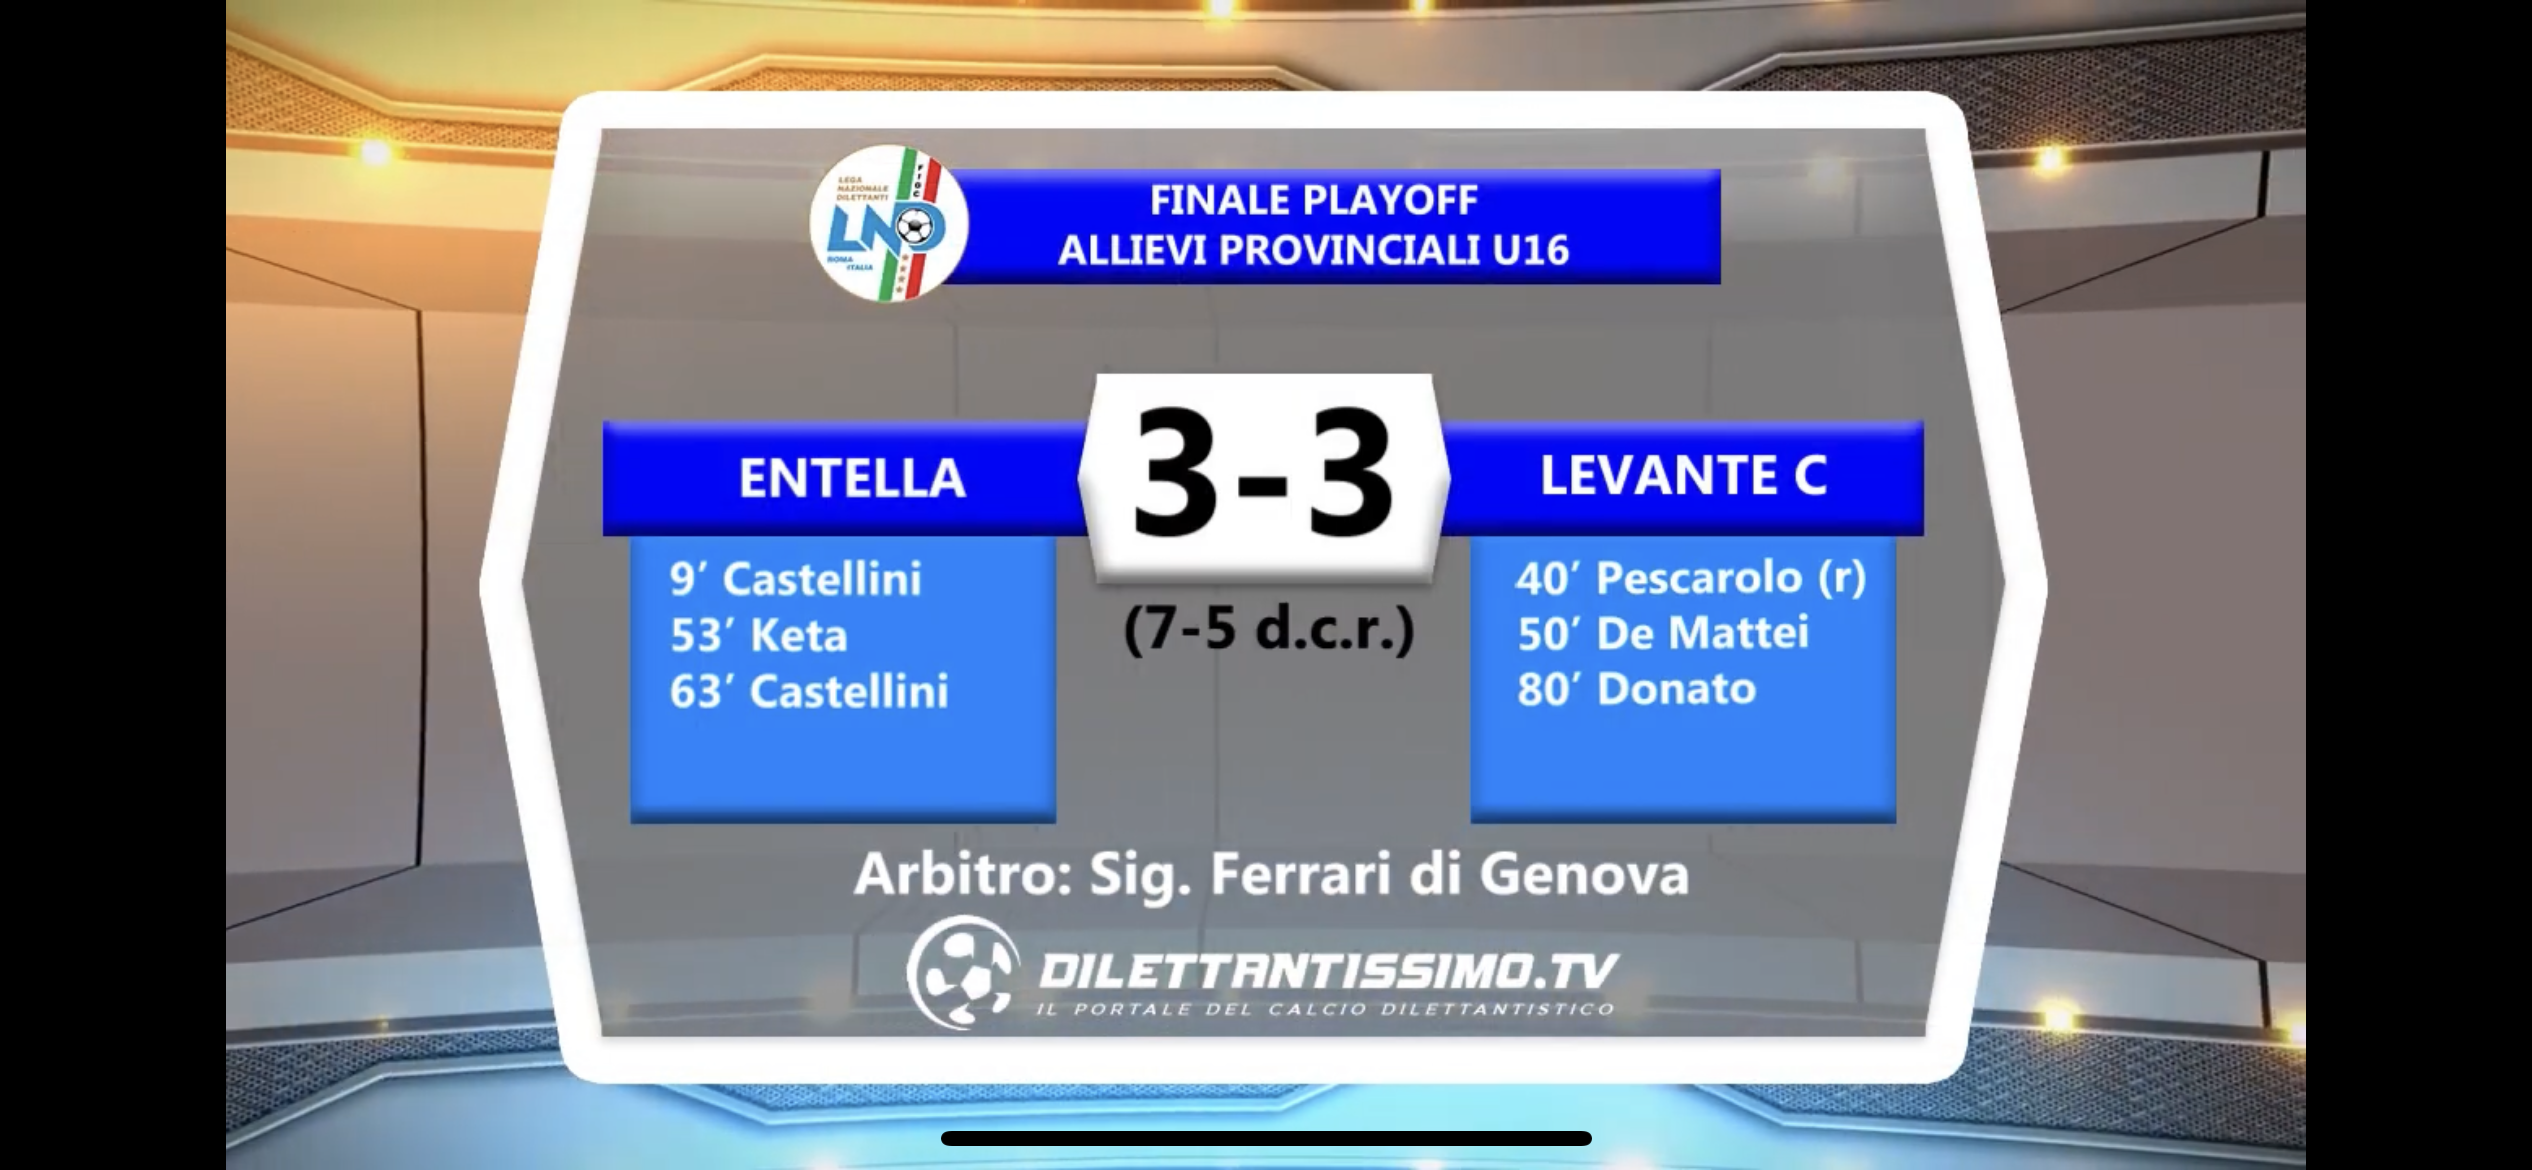 FINALE: ENTELLA- LEVANTE C 7-5 dcr